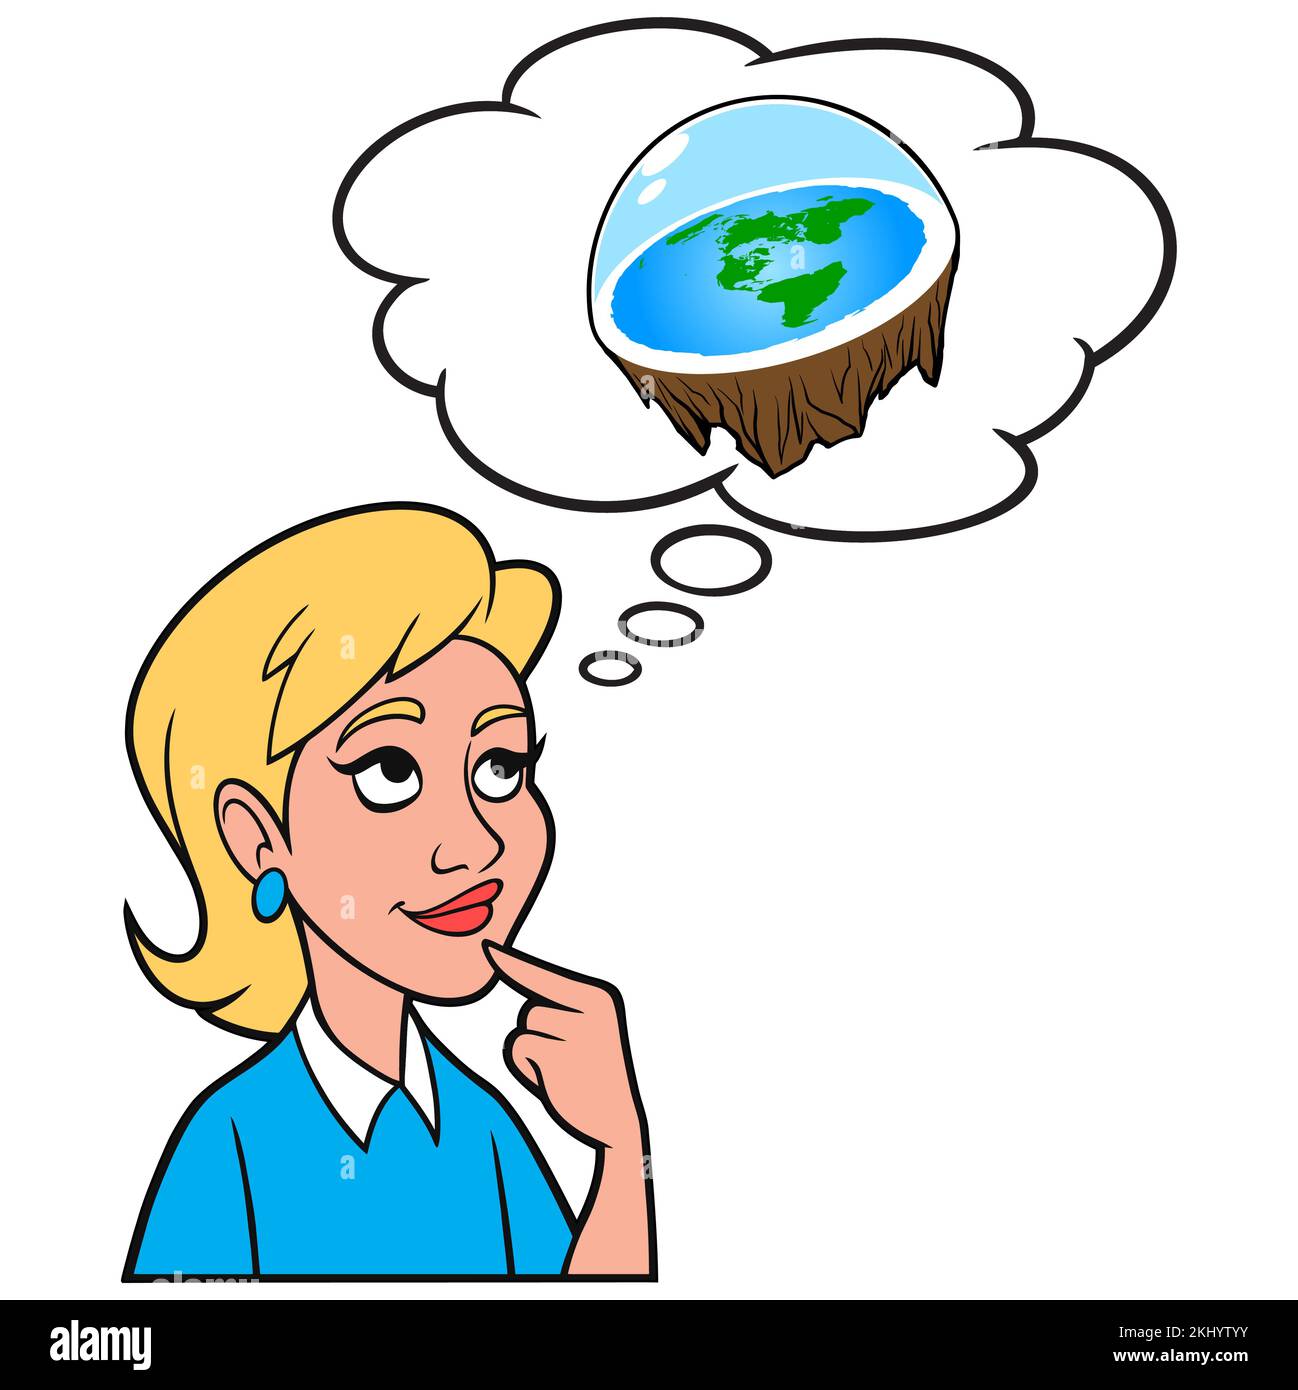 Niña pensando en la Teoría de la Tierra Plana - Una ilustración de dibujos animados de una niña pensando en el concepto de la Teoría de la Tierra Plana. Ilustración del Vector